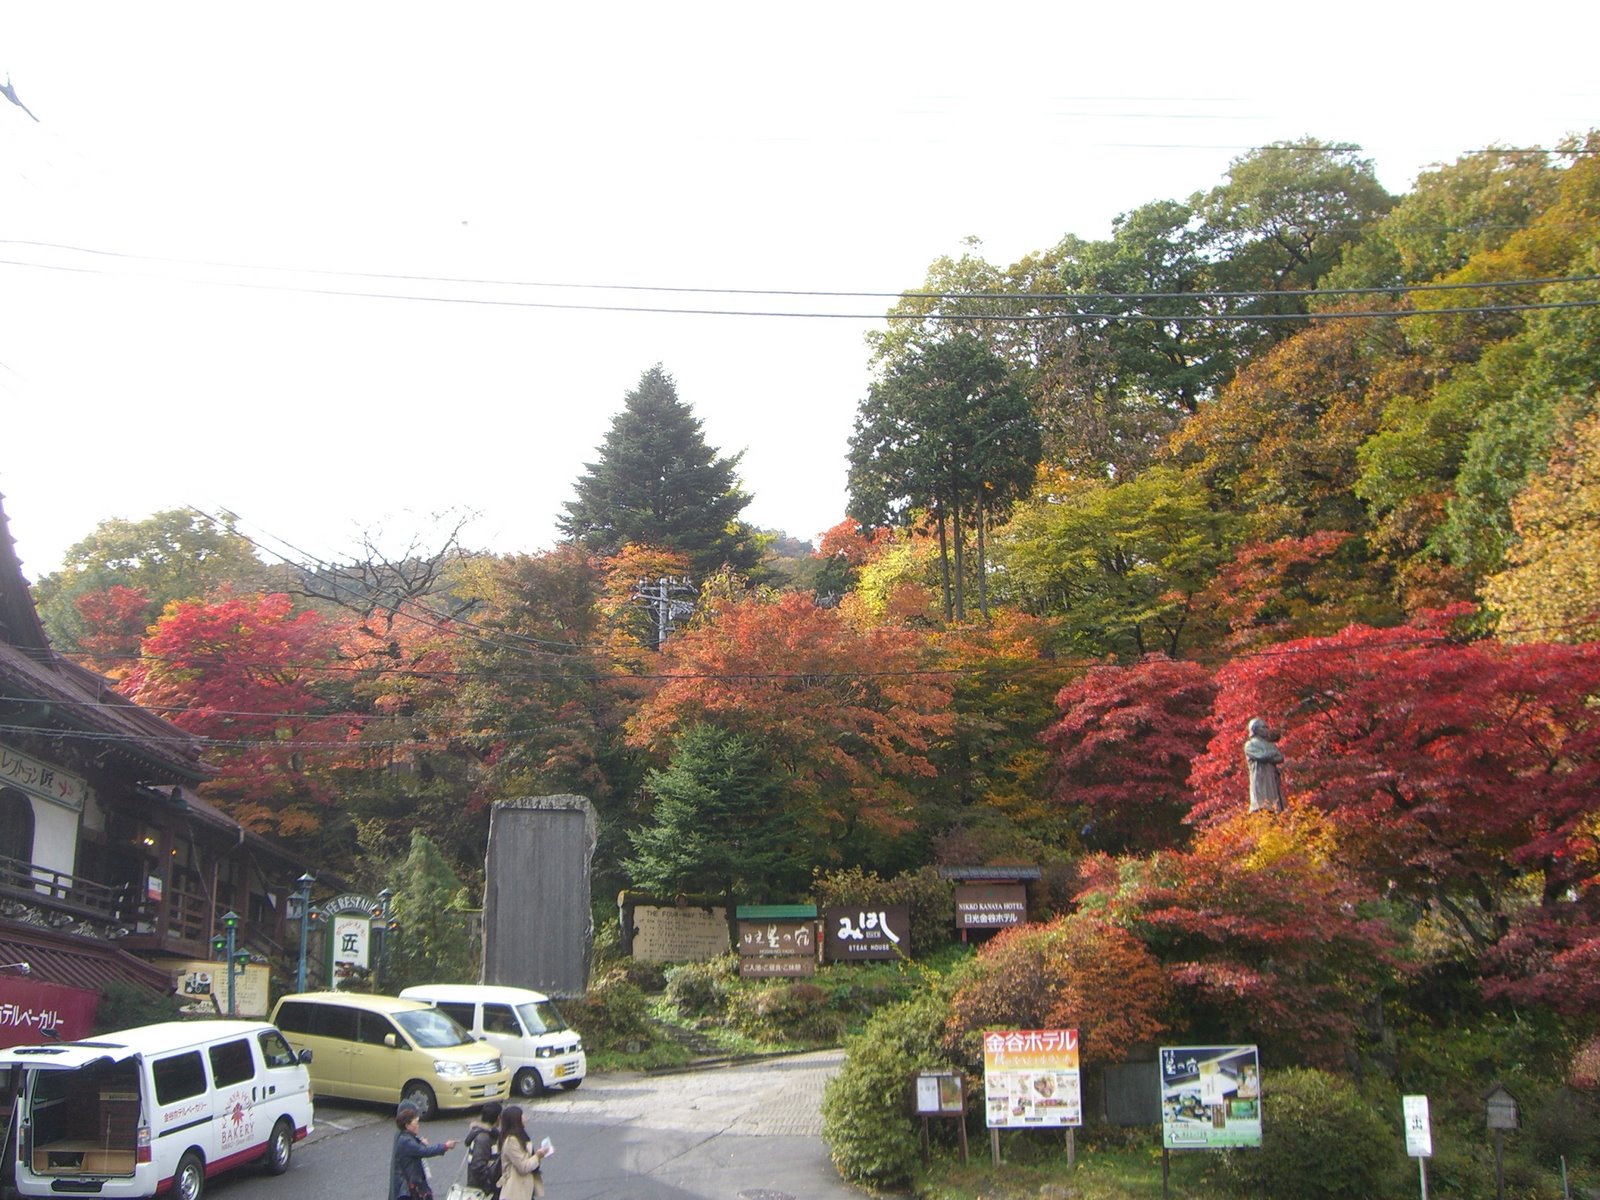 Datei 栃木県 日光にて 紅葉をみるにはいい時期だったようです Panoramio Jpg Wikipedia